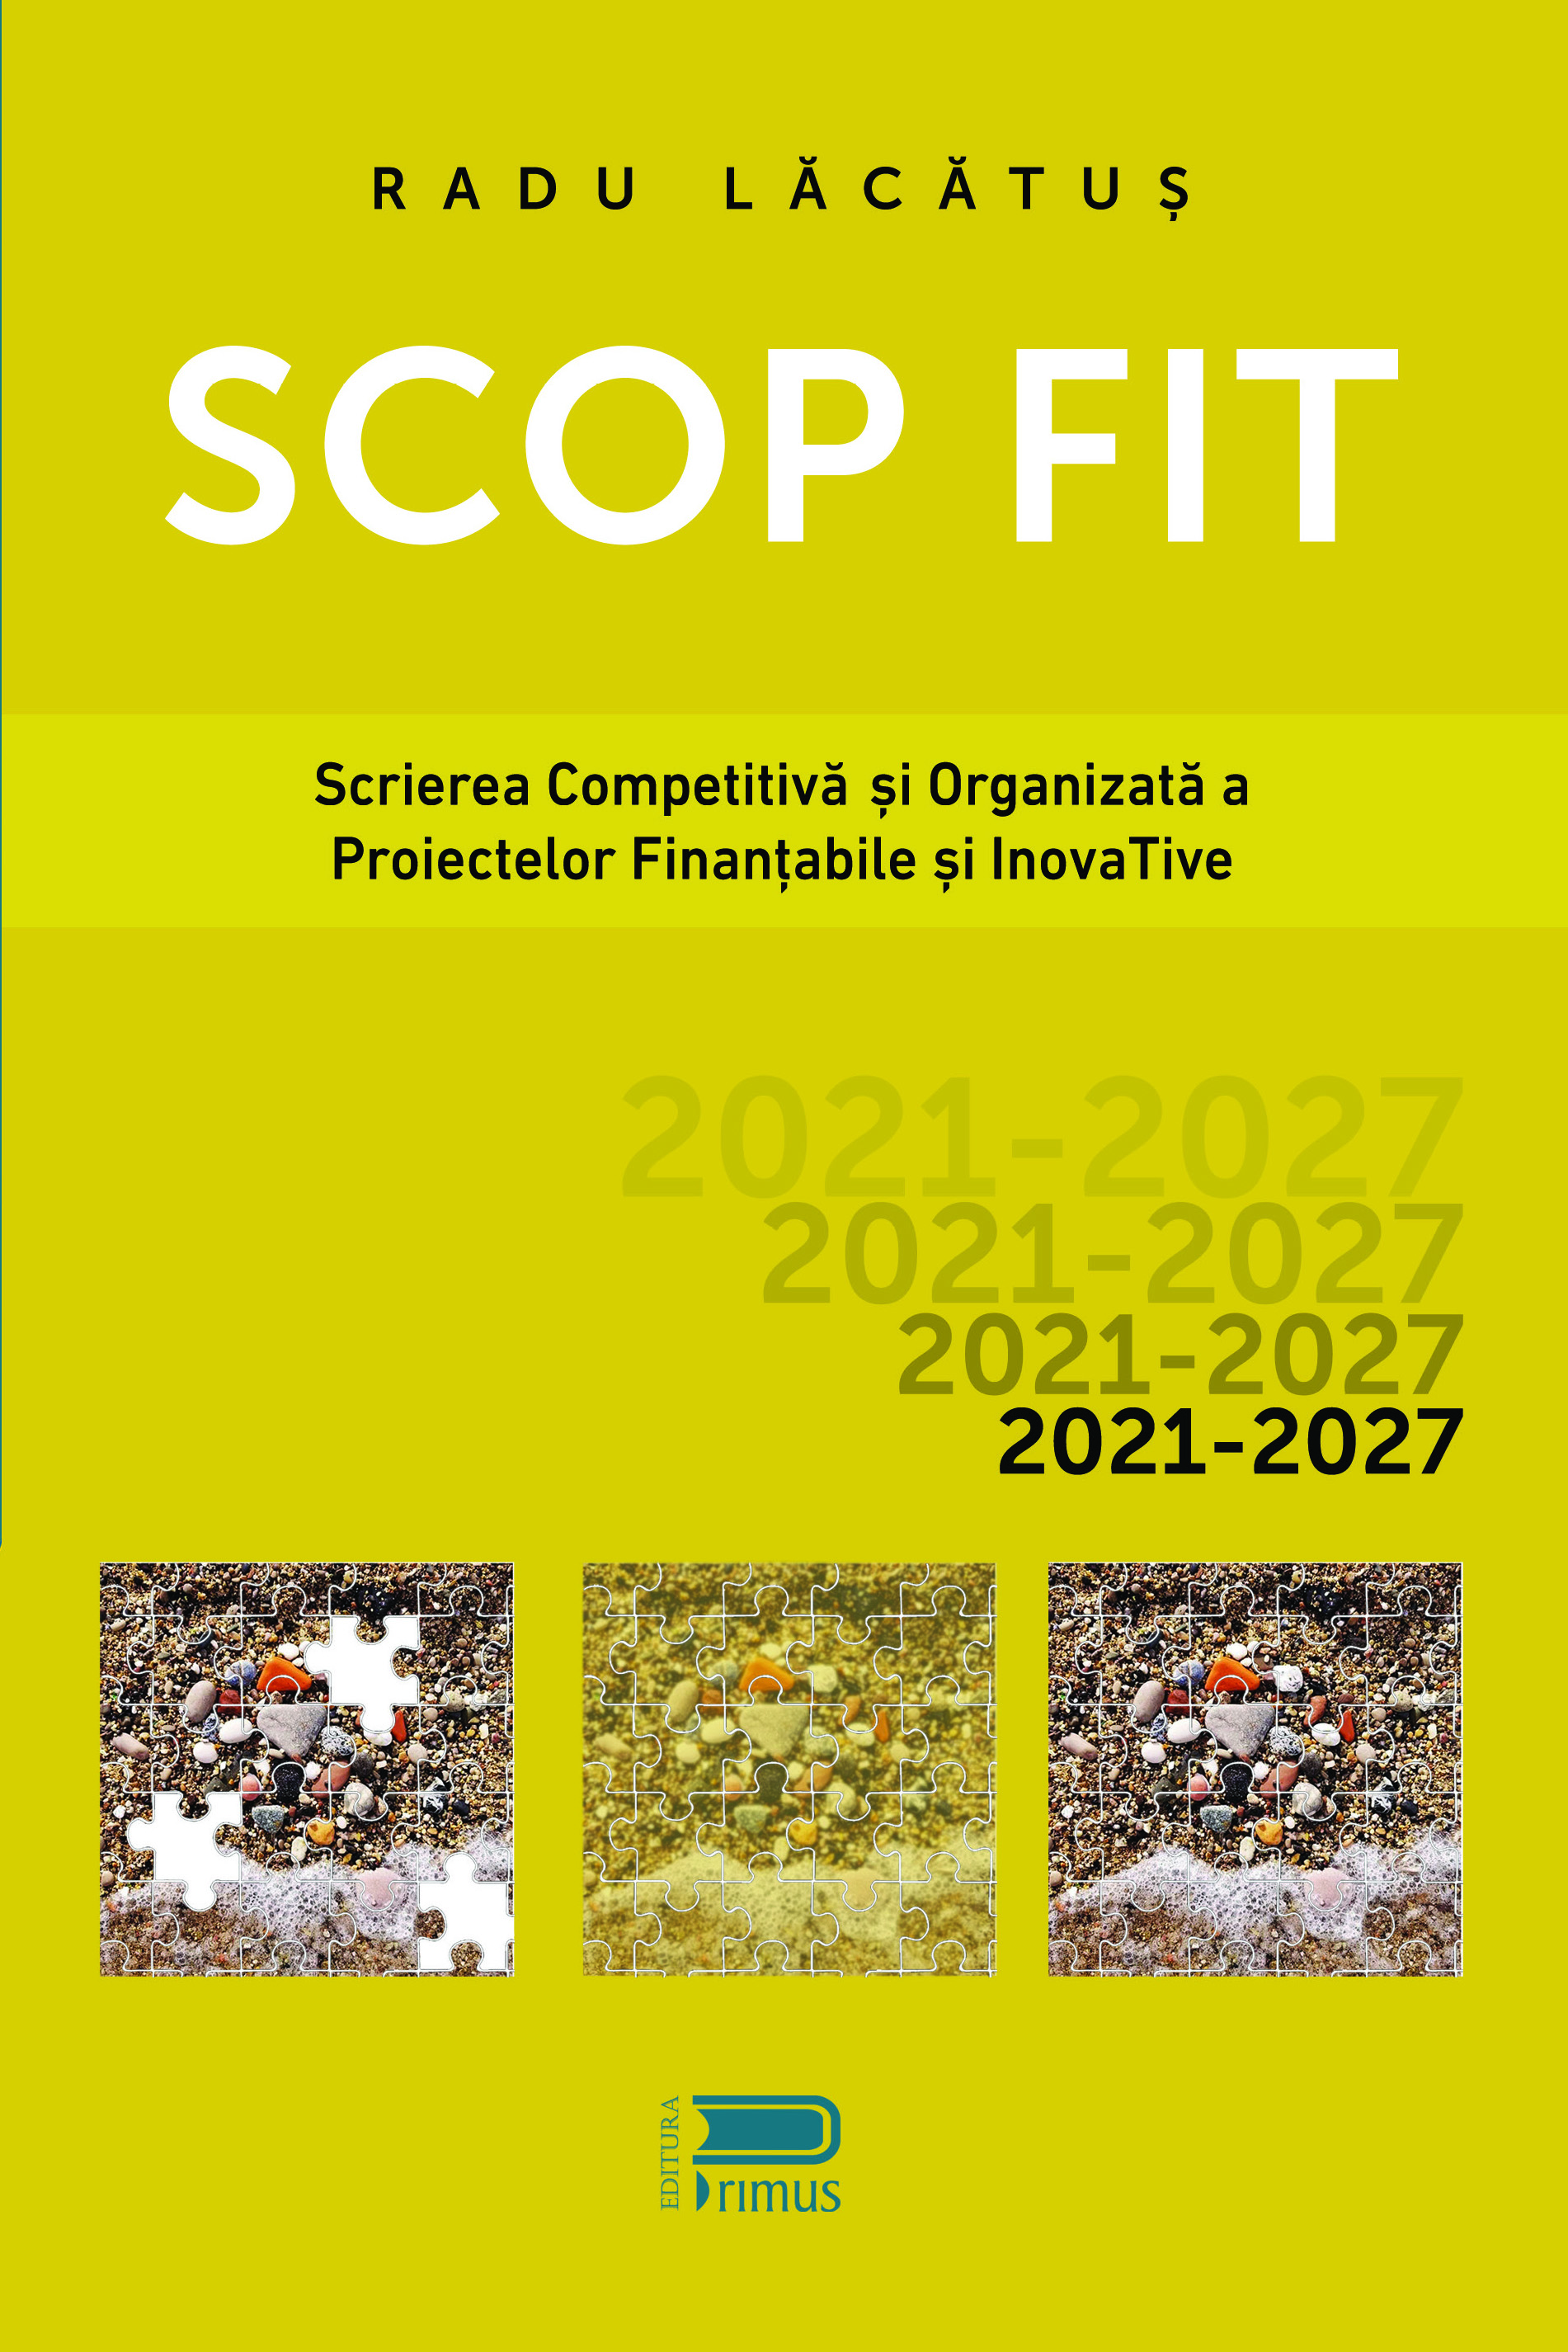 SCOP FIT: Scrierea competitiva si organizata a proiectelor finantabile si inovative | Radu Lacatus Business 2022